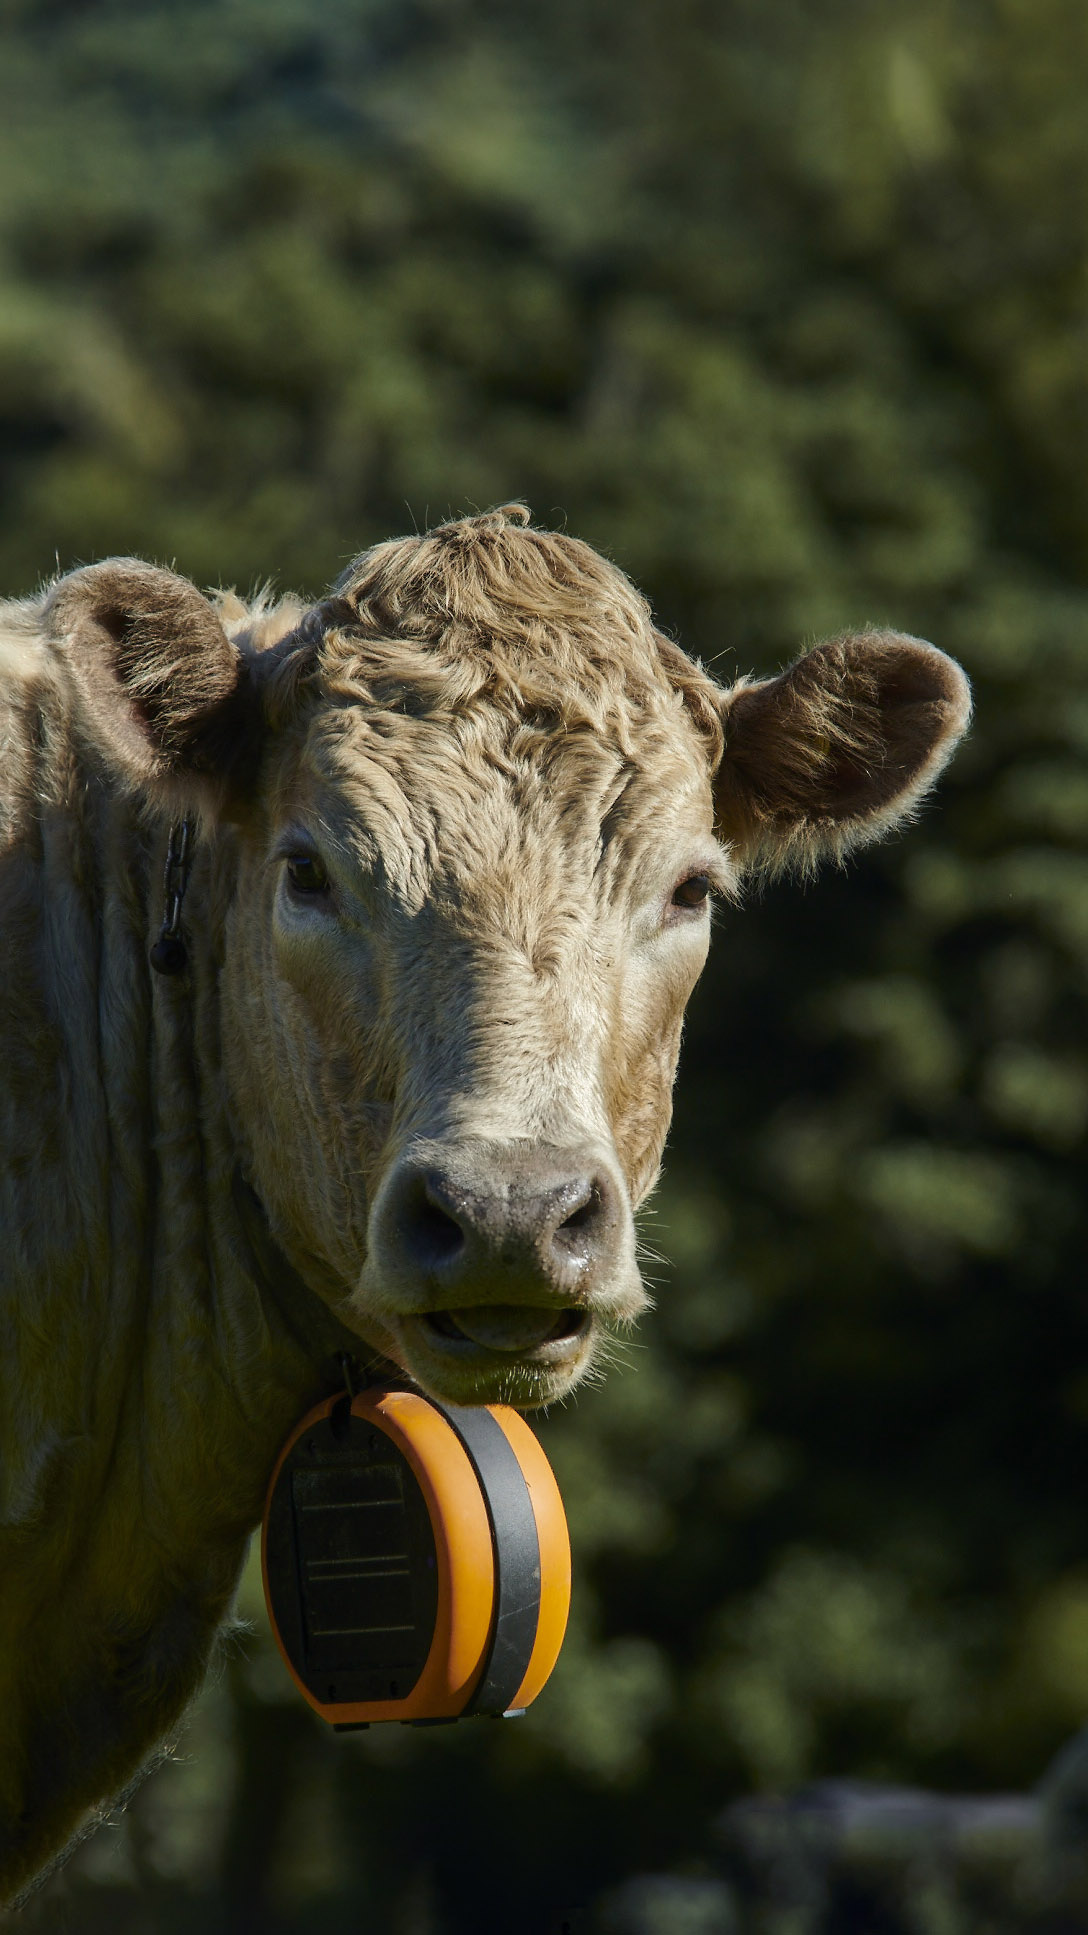 Cow with eShepherd neck band